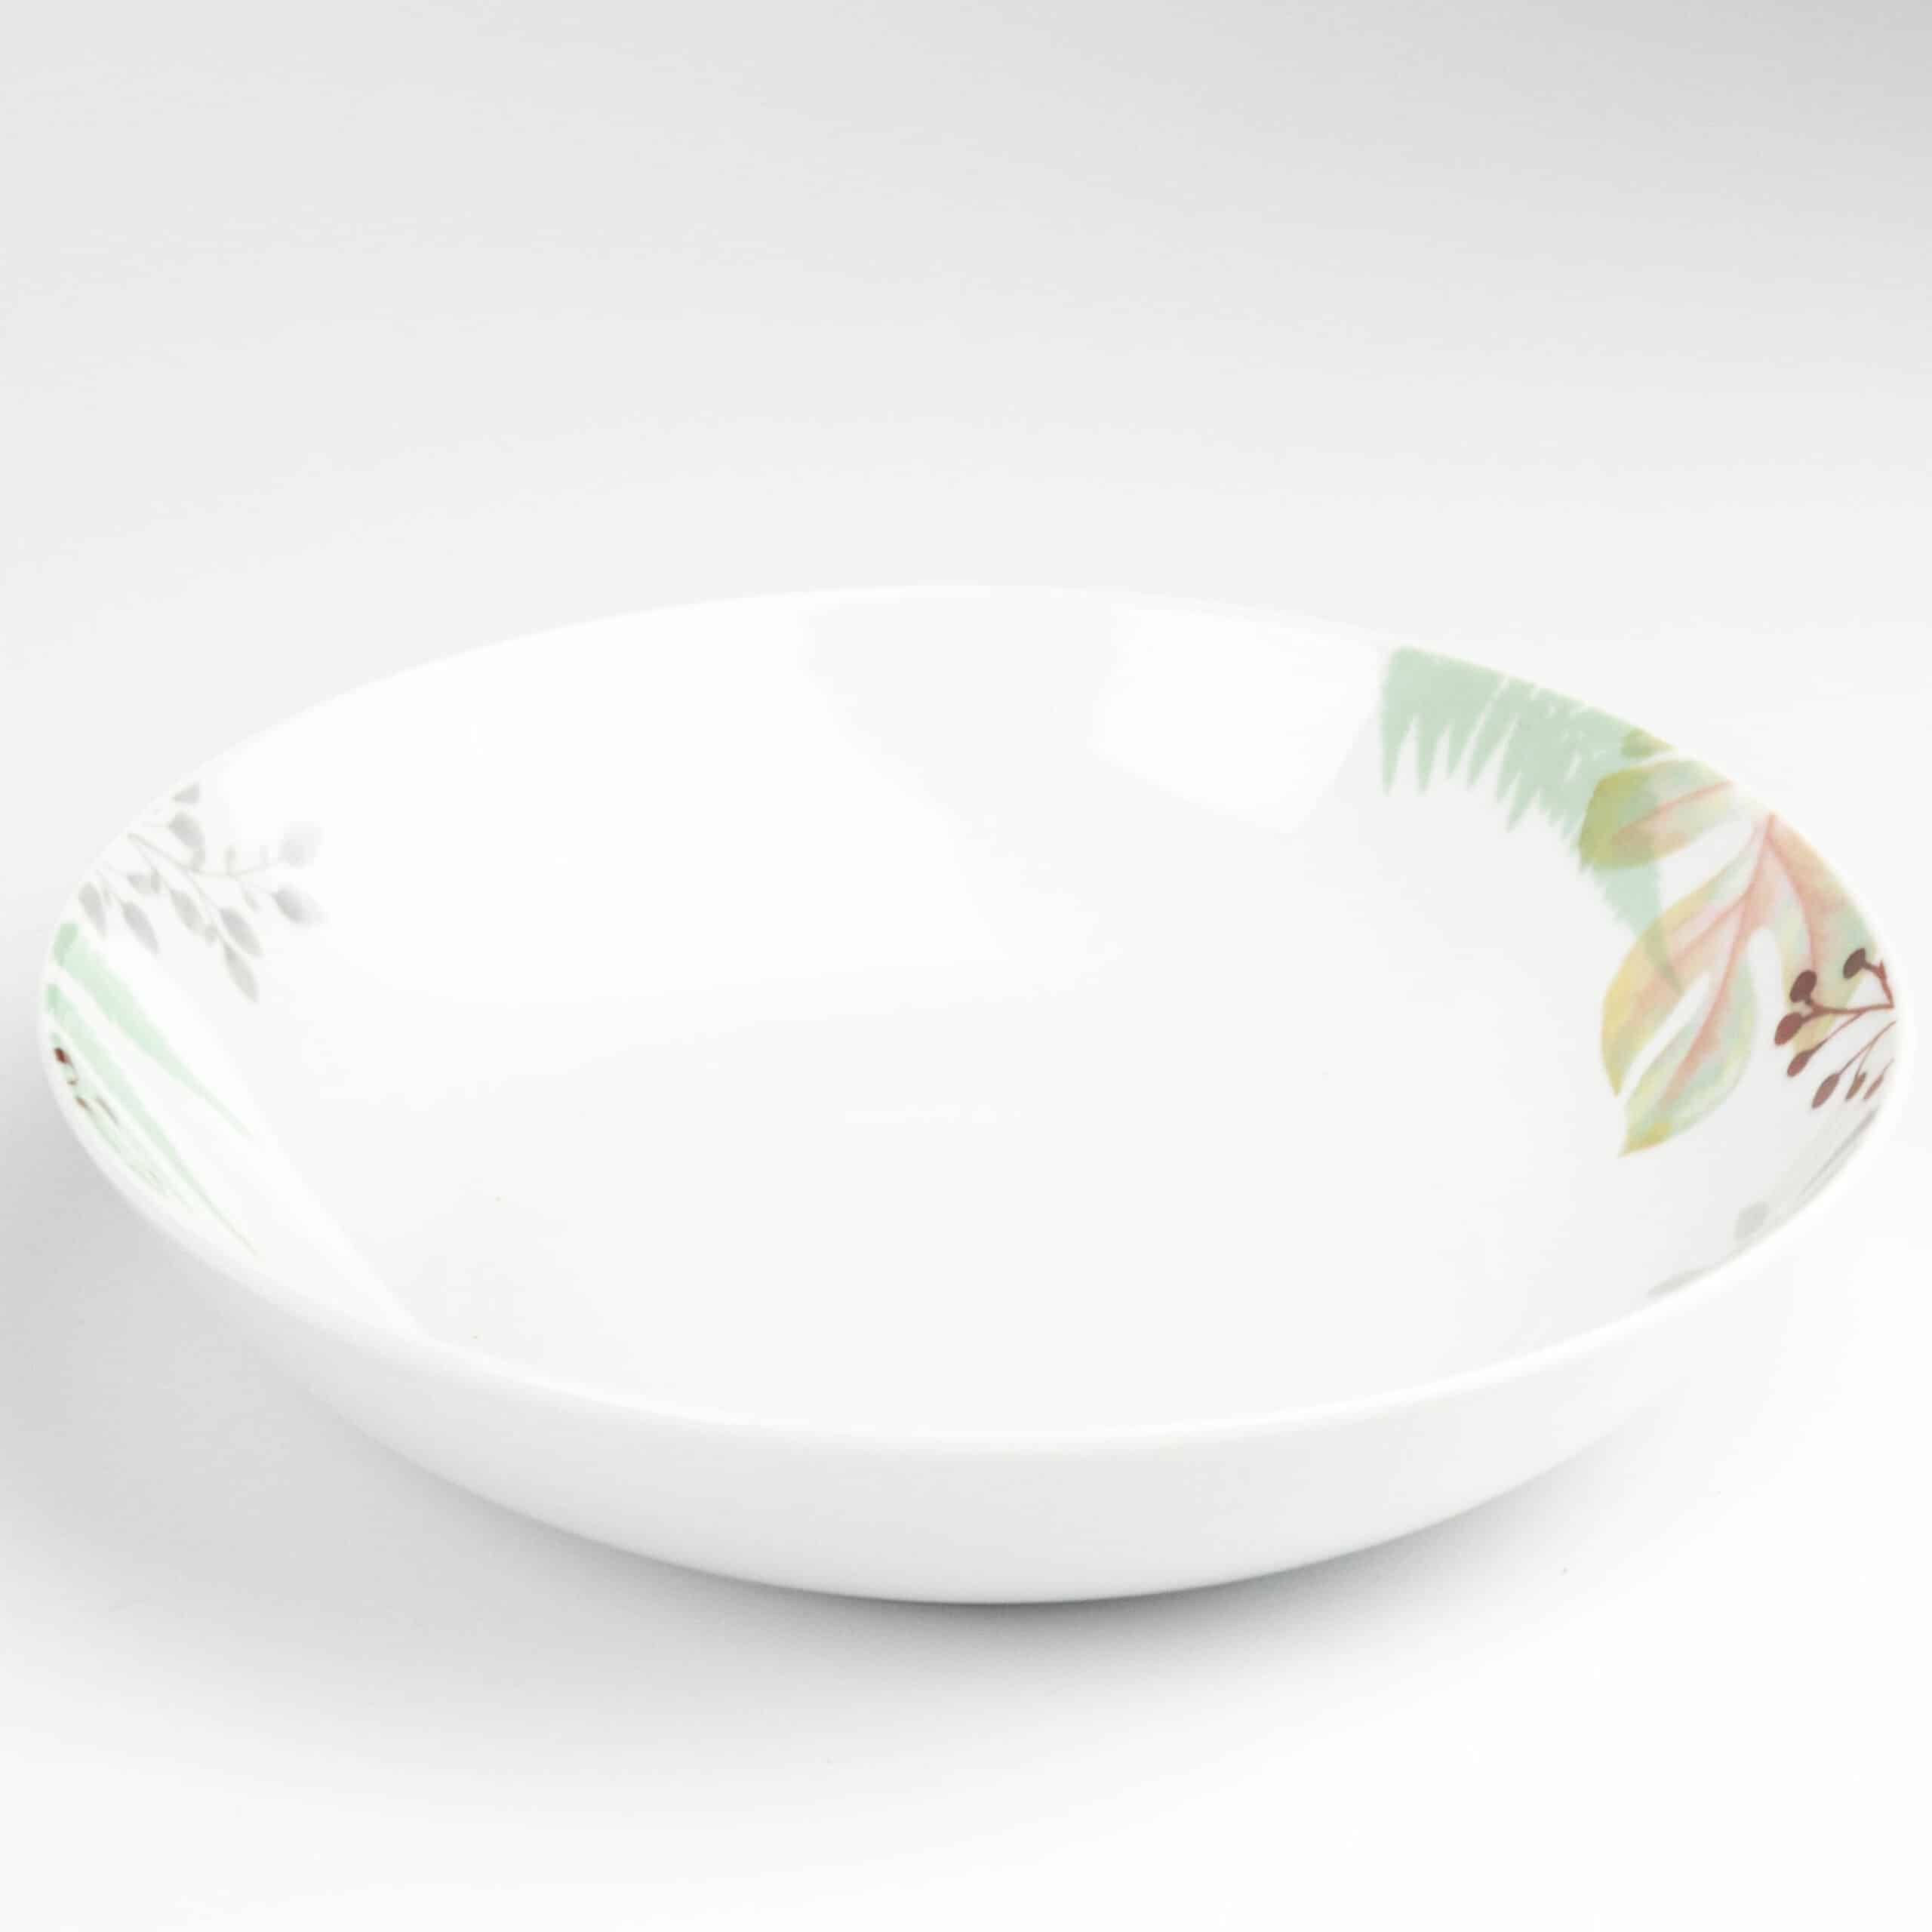 Servizio piatti 18 pezzi costa rica in porcellana bianca linea madison